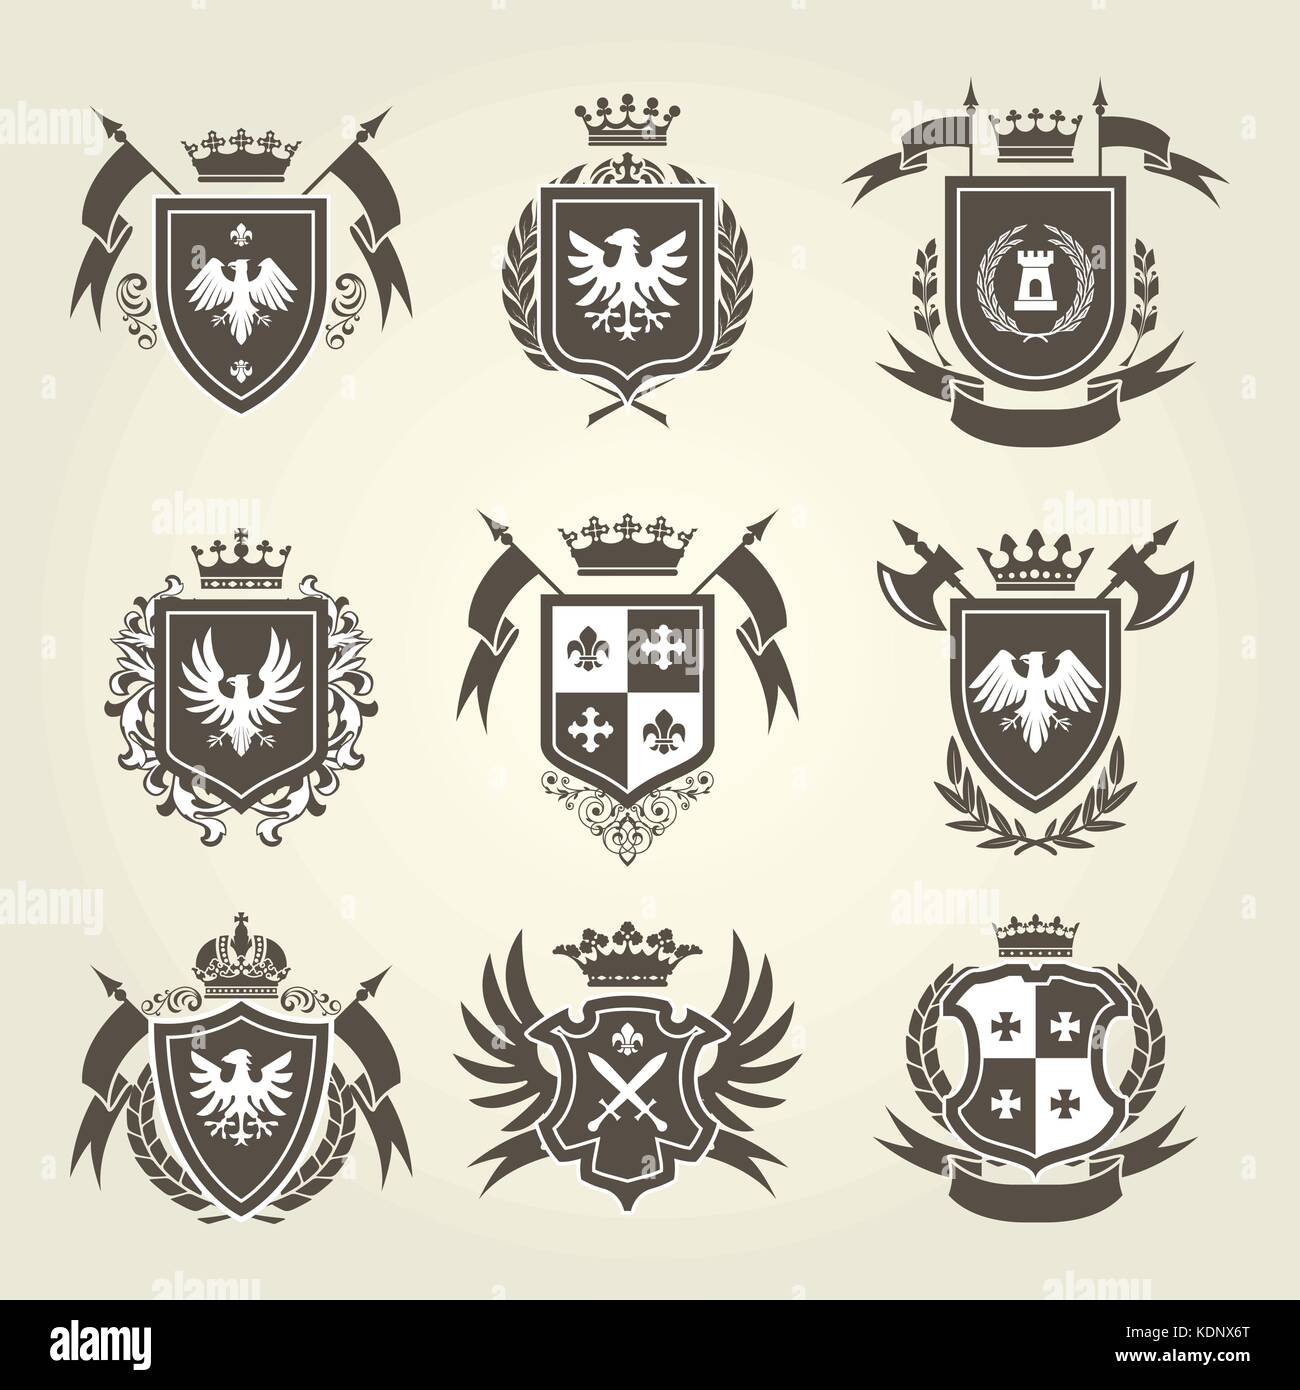 Royal médiéval armoiries et emblèmes Knight - bouclier héraldique cimier  Image Vectorielle Stock - Alamy